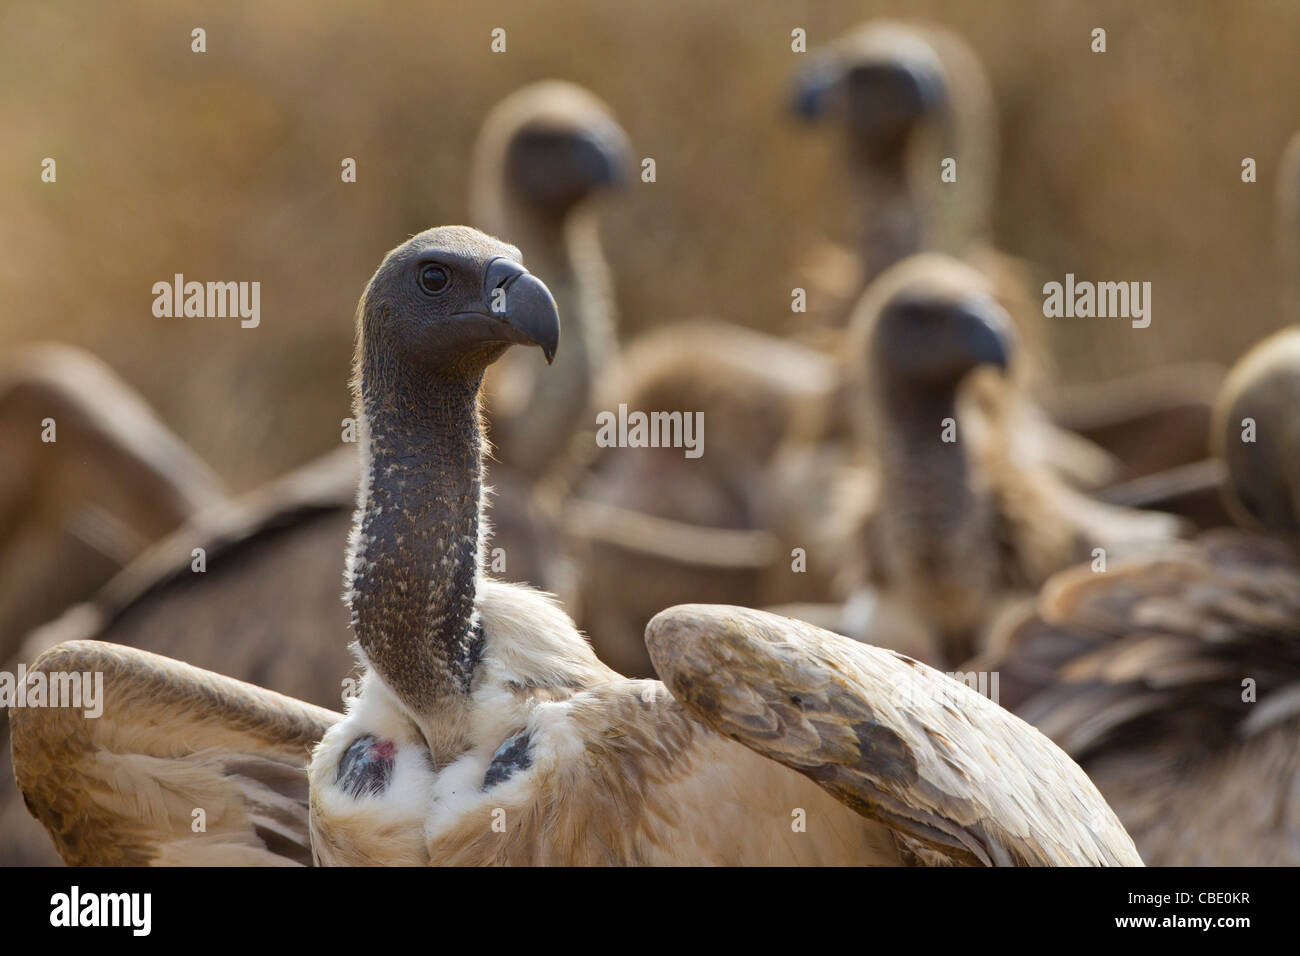 Diese erstaunliche Vögel haben eine der besten Auge Sehenswürdigkeiten der Welt. Stockfoto